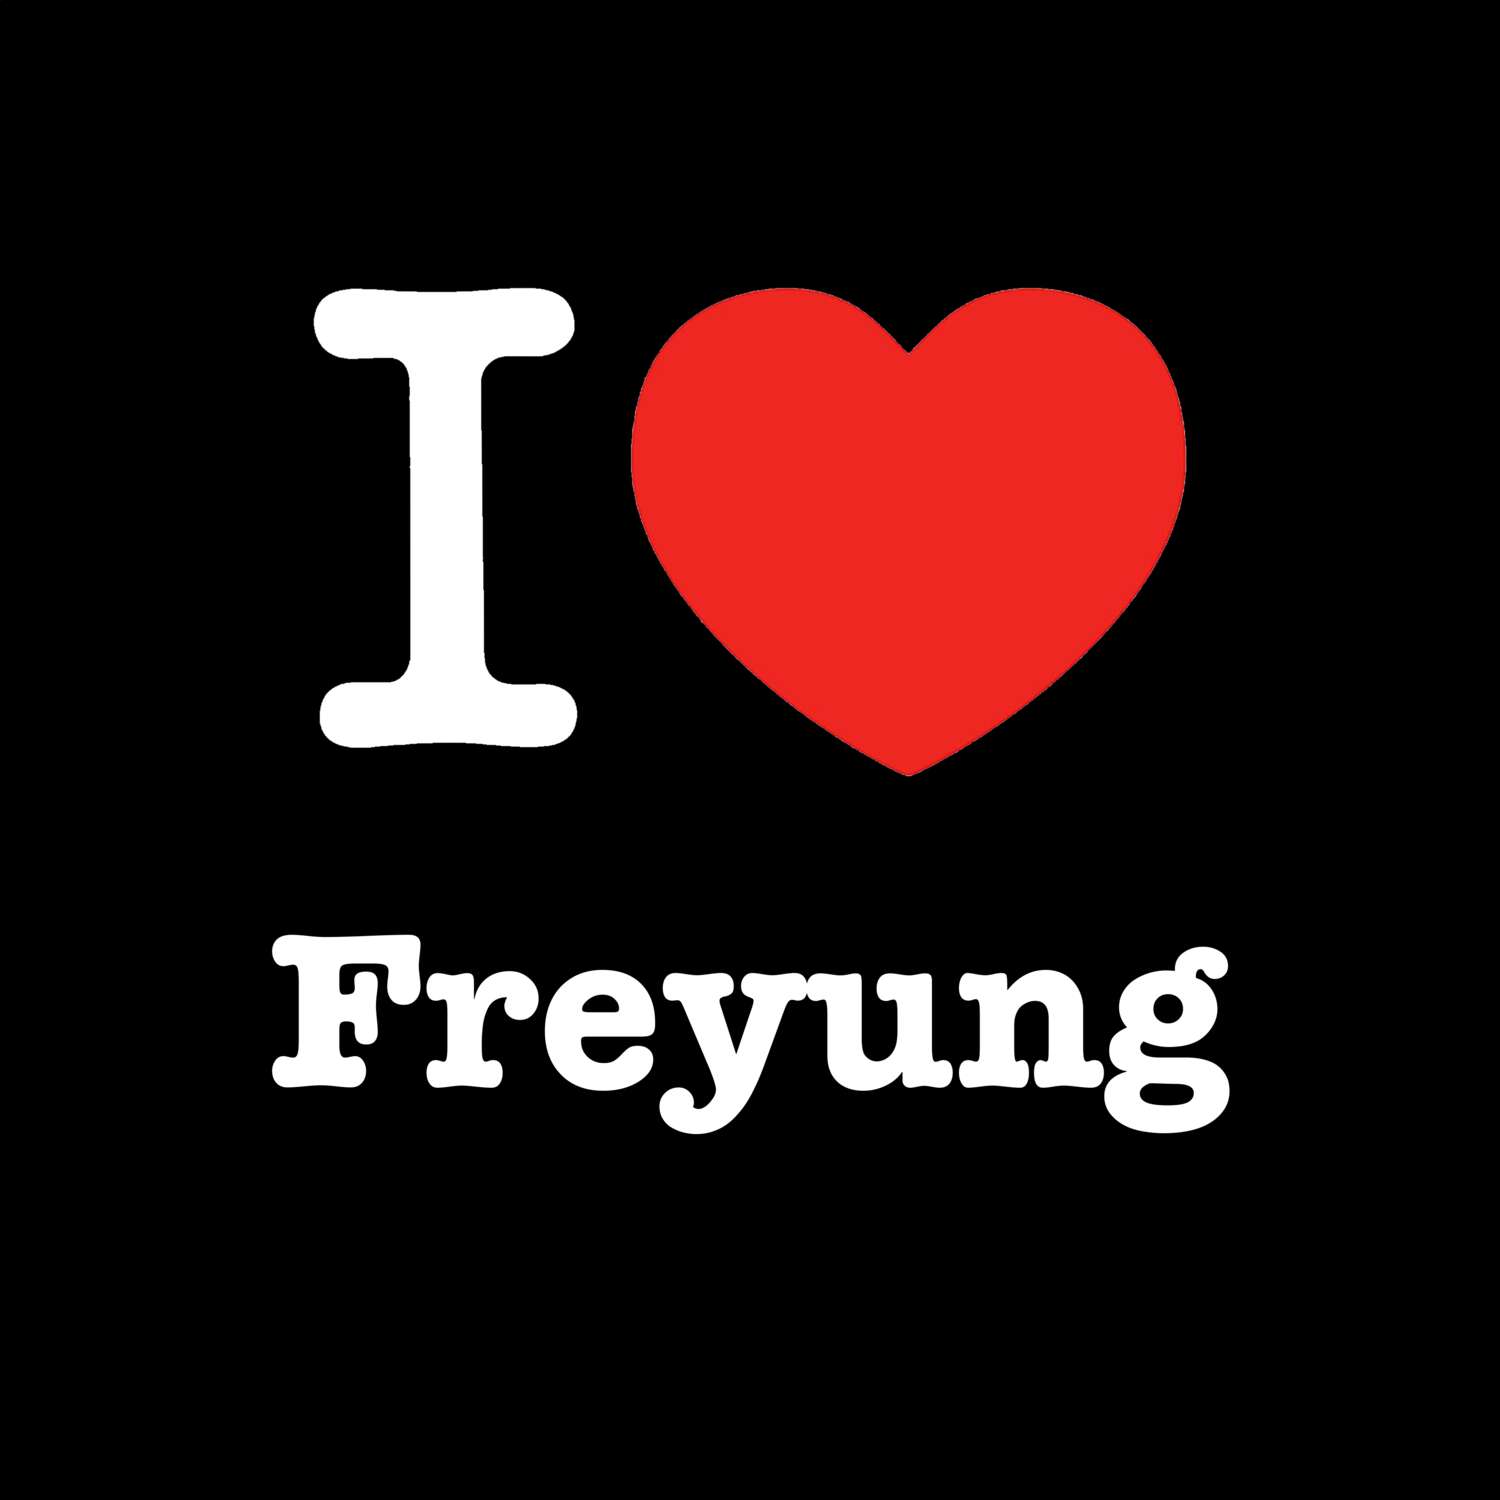 Freyung T-Shirt »I love«